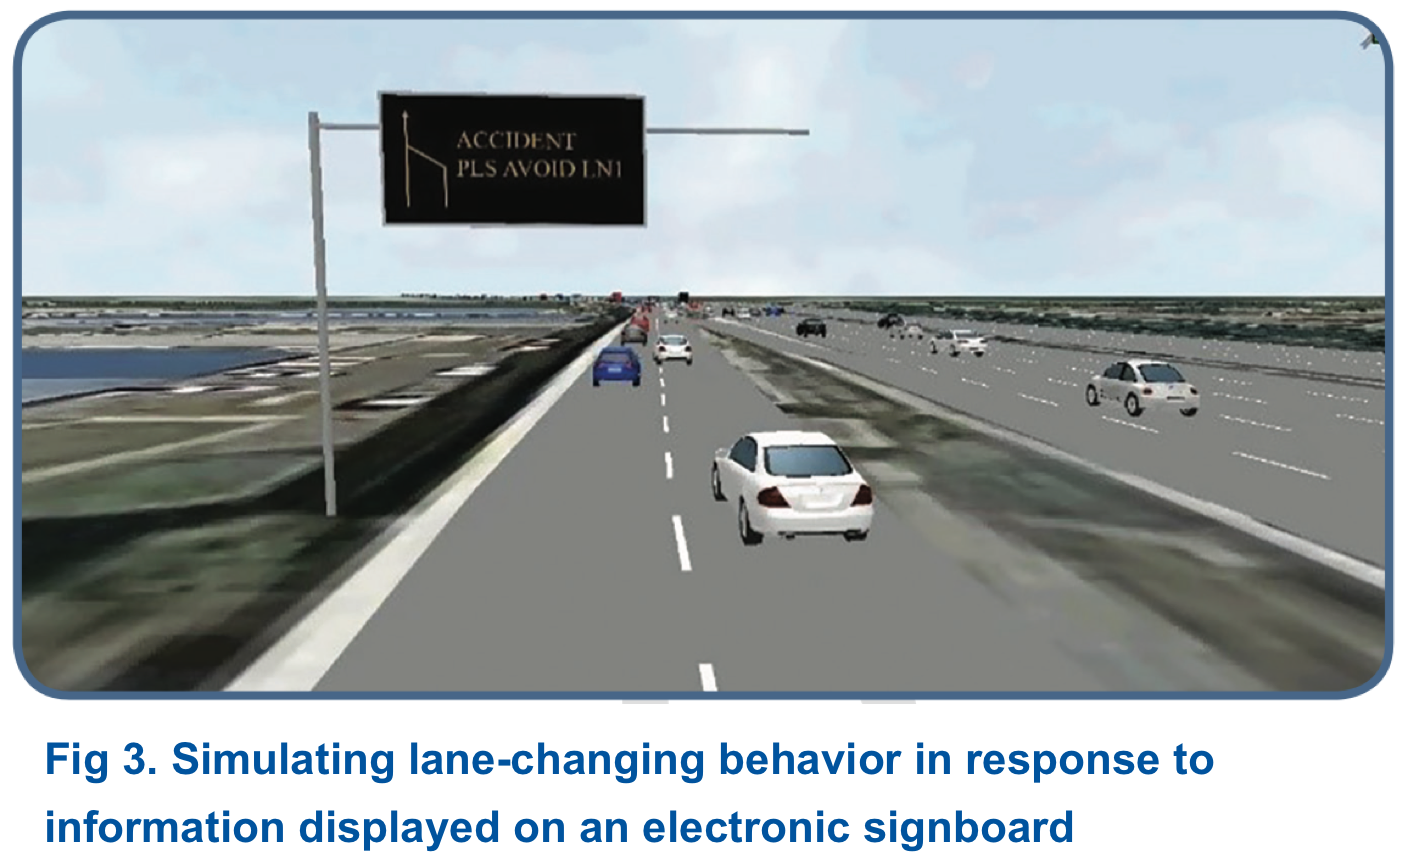 Simulating lane-changing behavior in response to information displayed on an electronic signboard